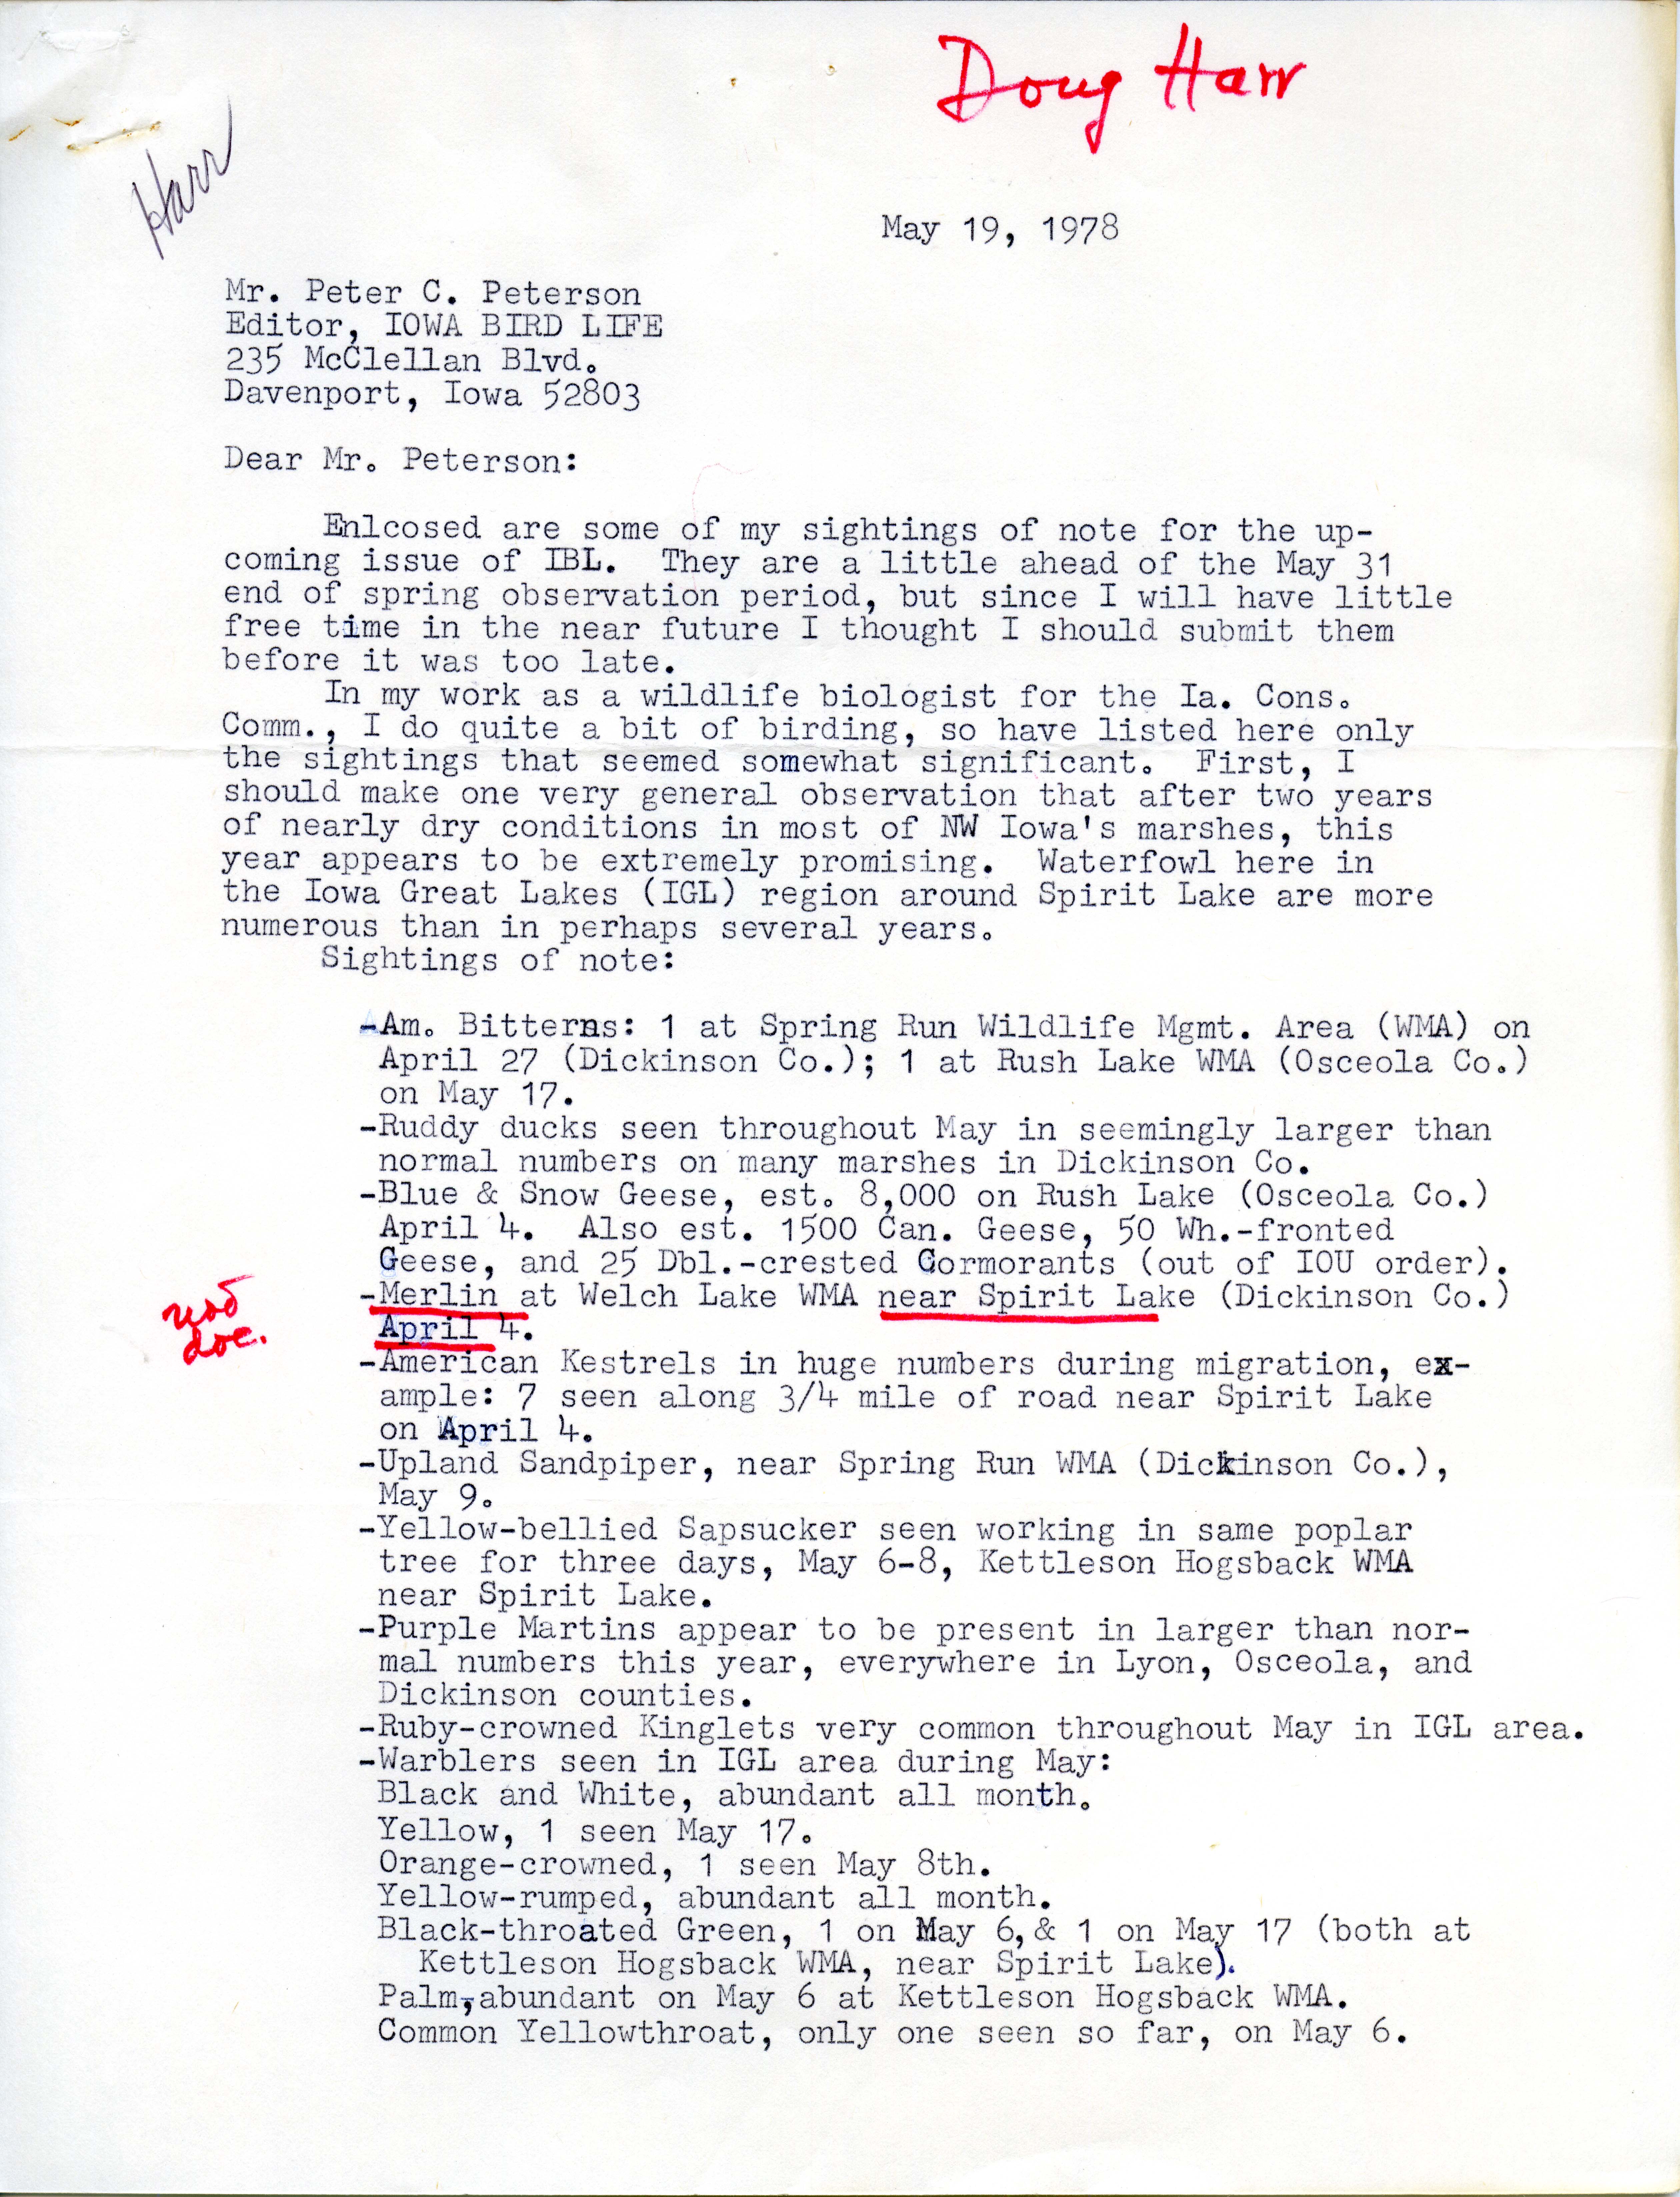 Douglas C. Harr  letter to Peter C. Petersen regarding bird sightings, May 19, 1978 